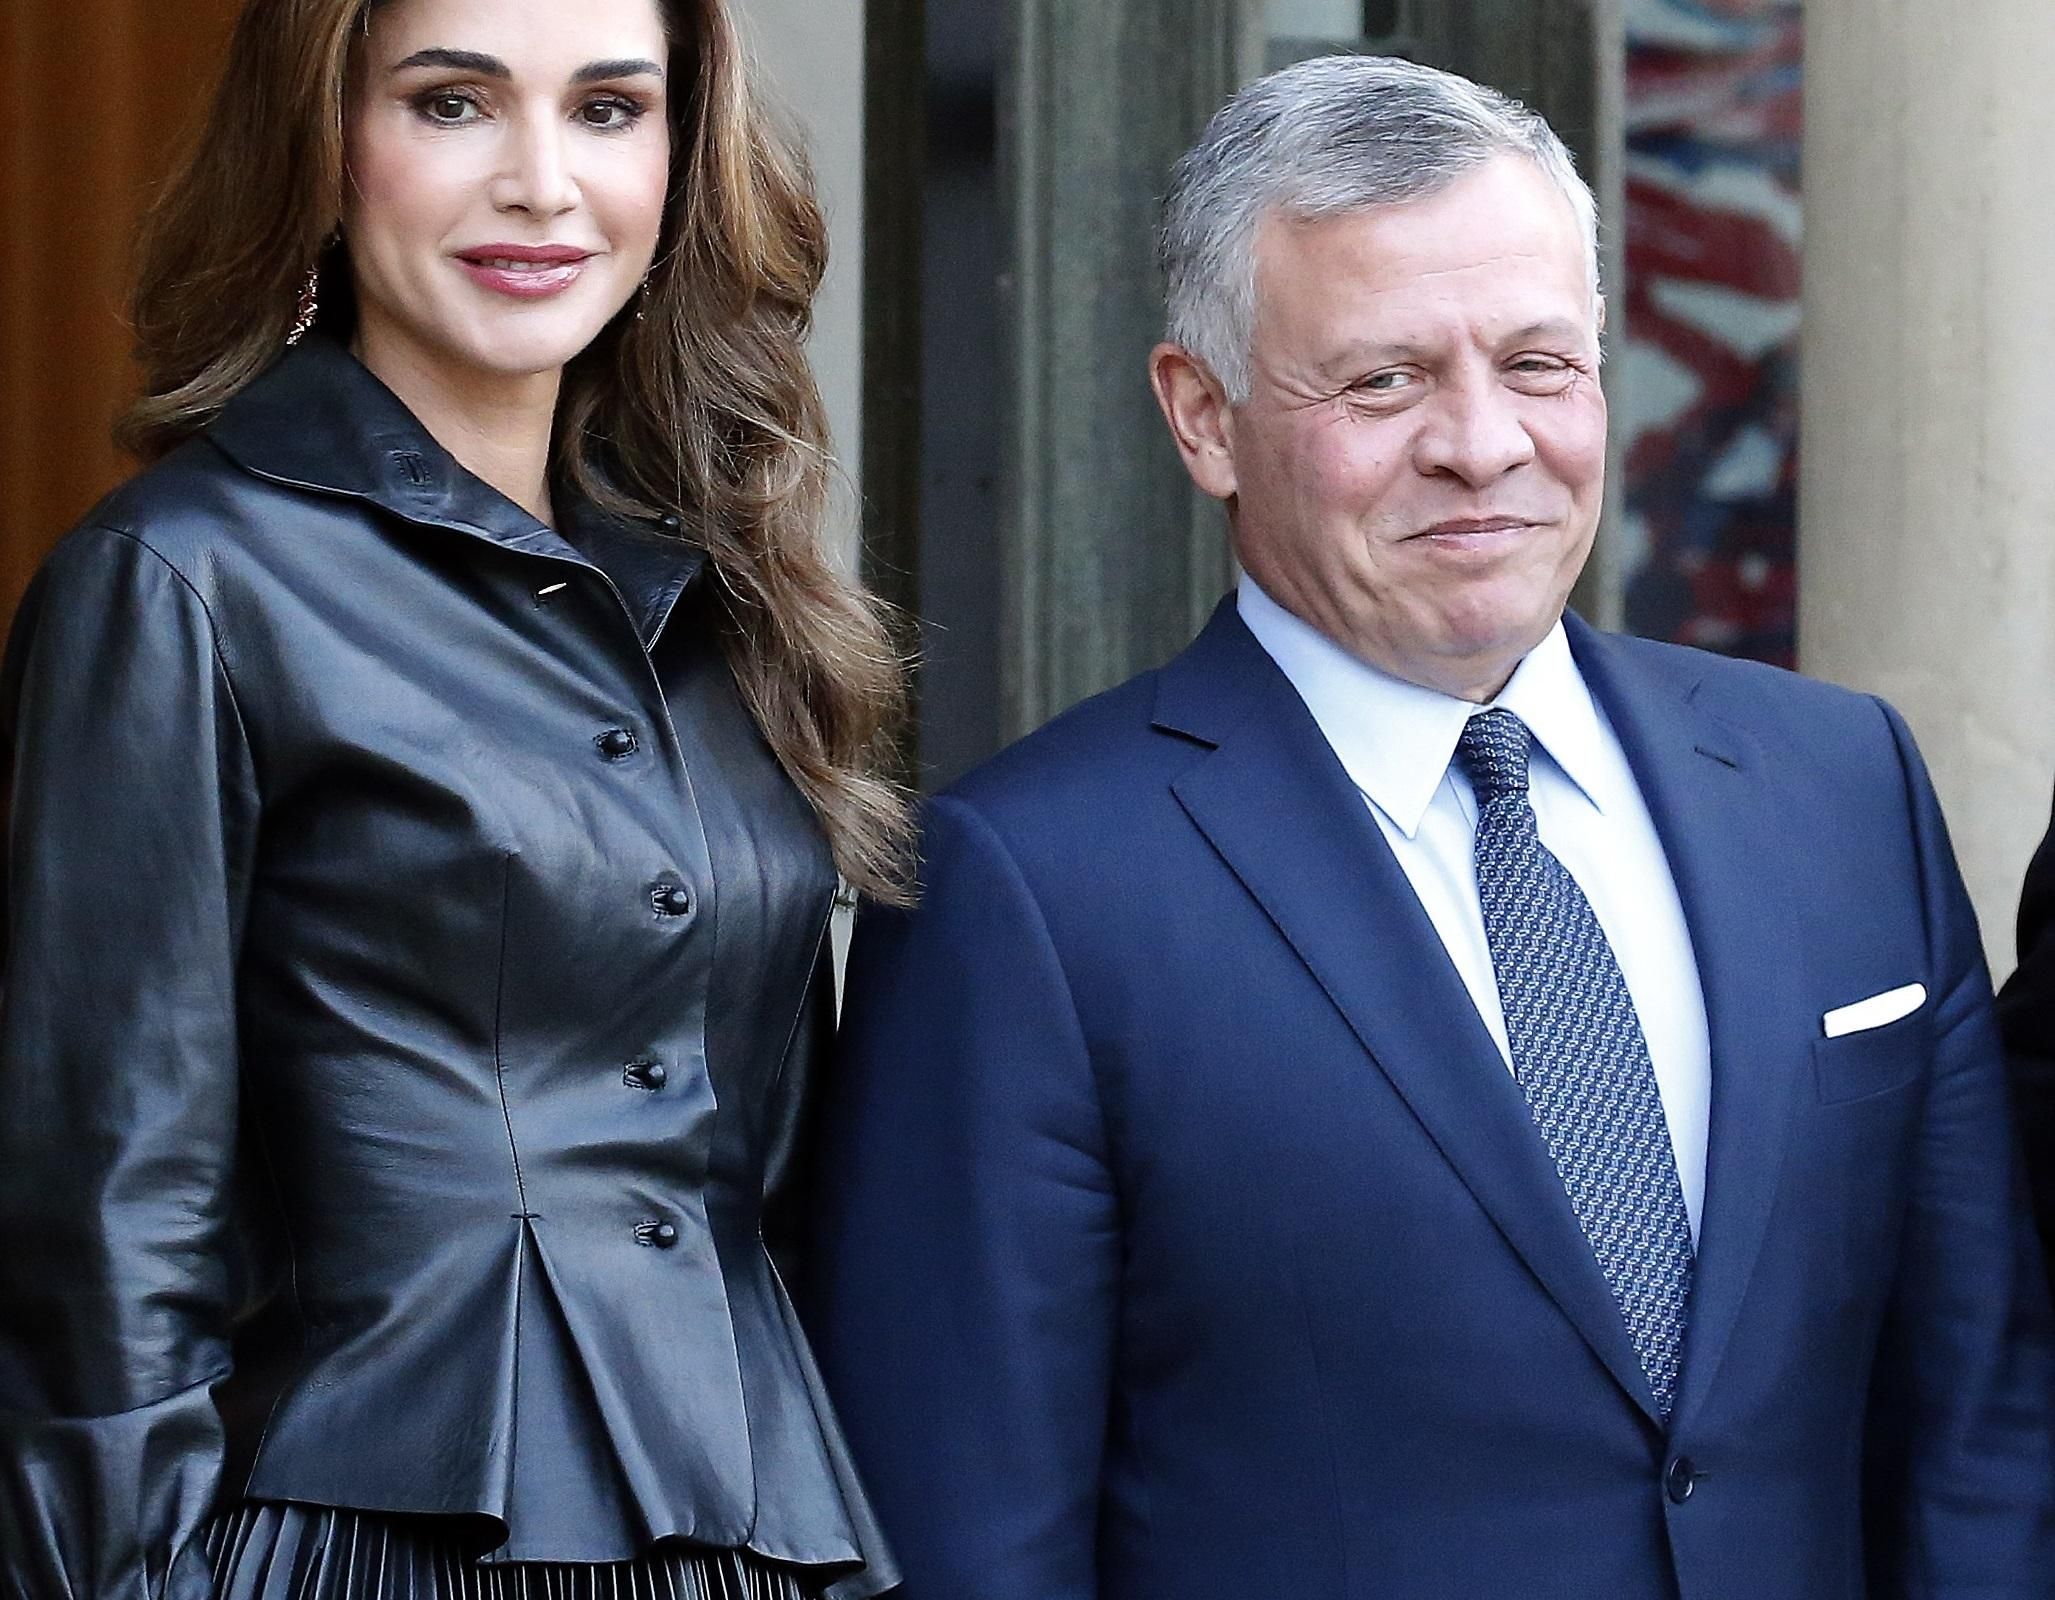 Королева Йорданії Ранія зворушливо привітала чоловіка з річницею весілля: архівні фото